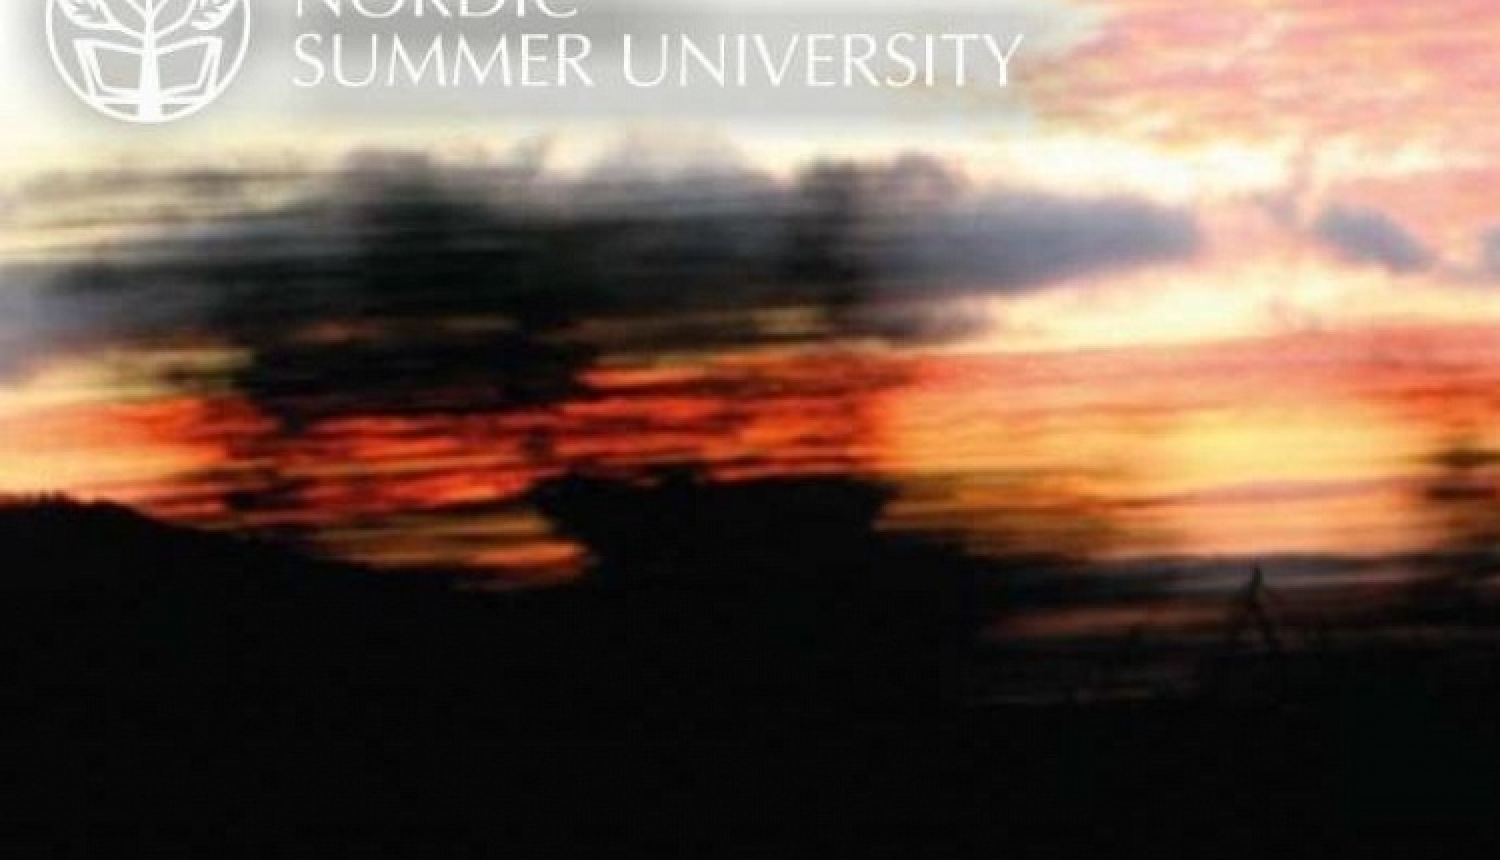 Ziemeļvalstu Vasaras universitātes vasaras sesija